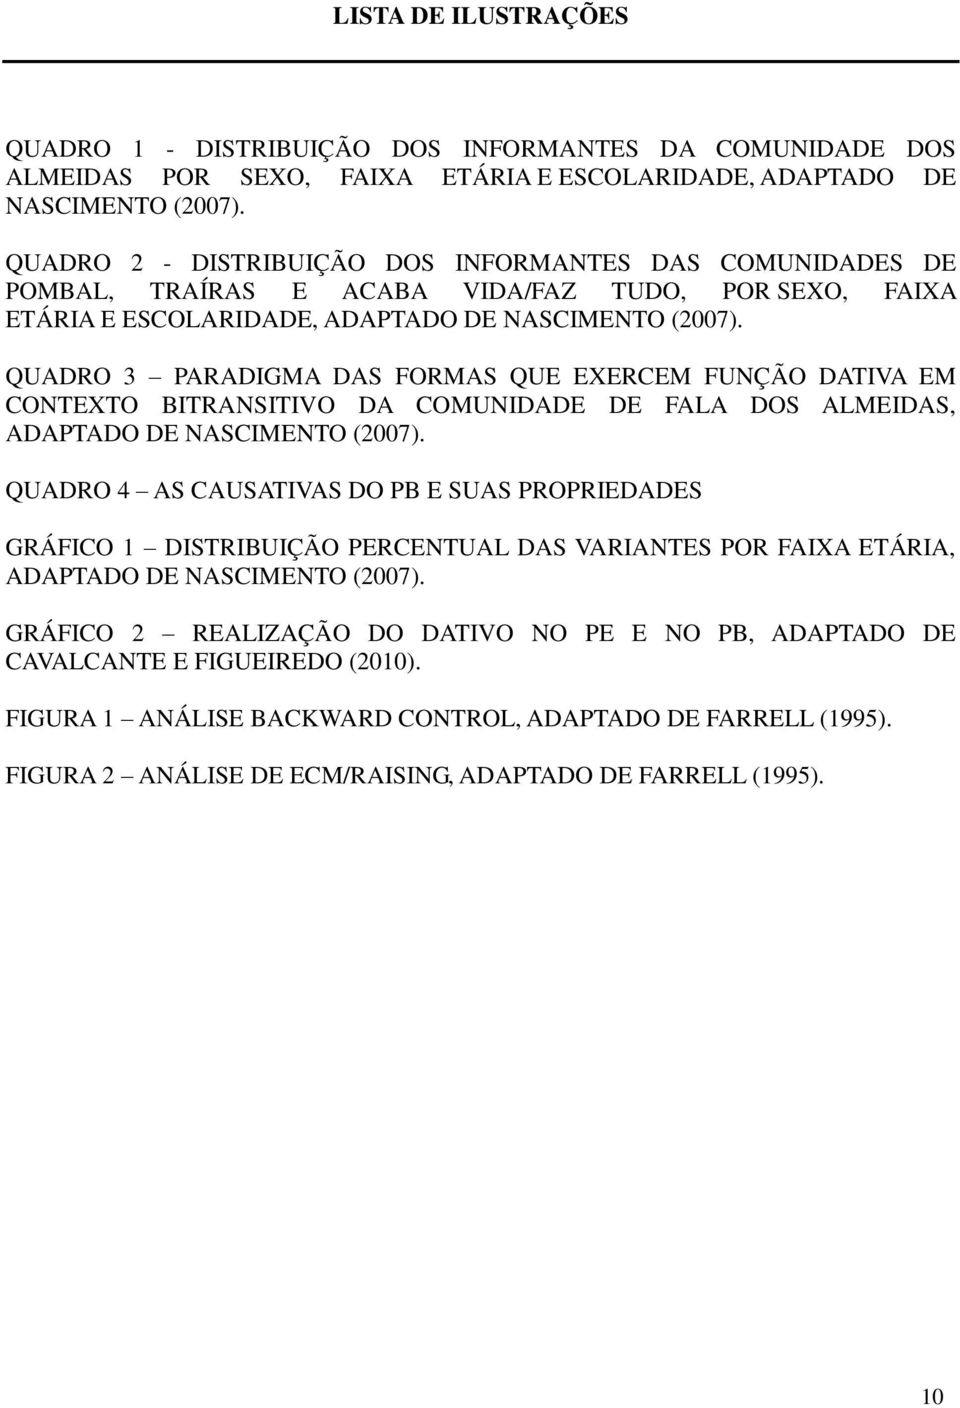 QUADRO 3 PARADIGMA DAS FORMAS QUE EXERCEM FUNÇÃO DATIVA EM CONTEXTO BITRANSITIVO DA COMUNIDADE DE FALA DOS ALMEIDAS, ADAPTADO DE NASCIMENTO (2007).